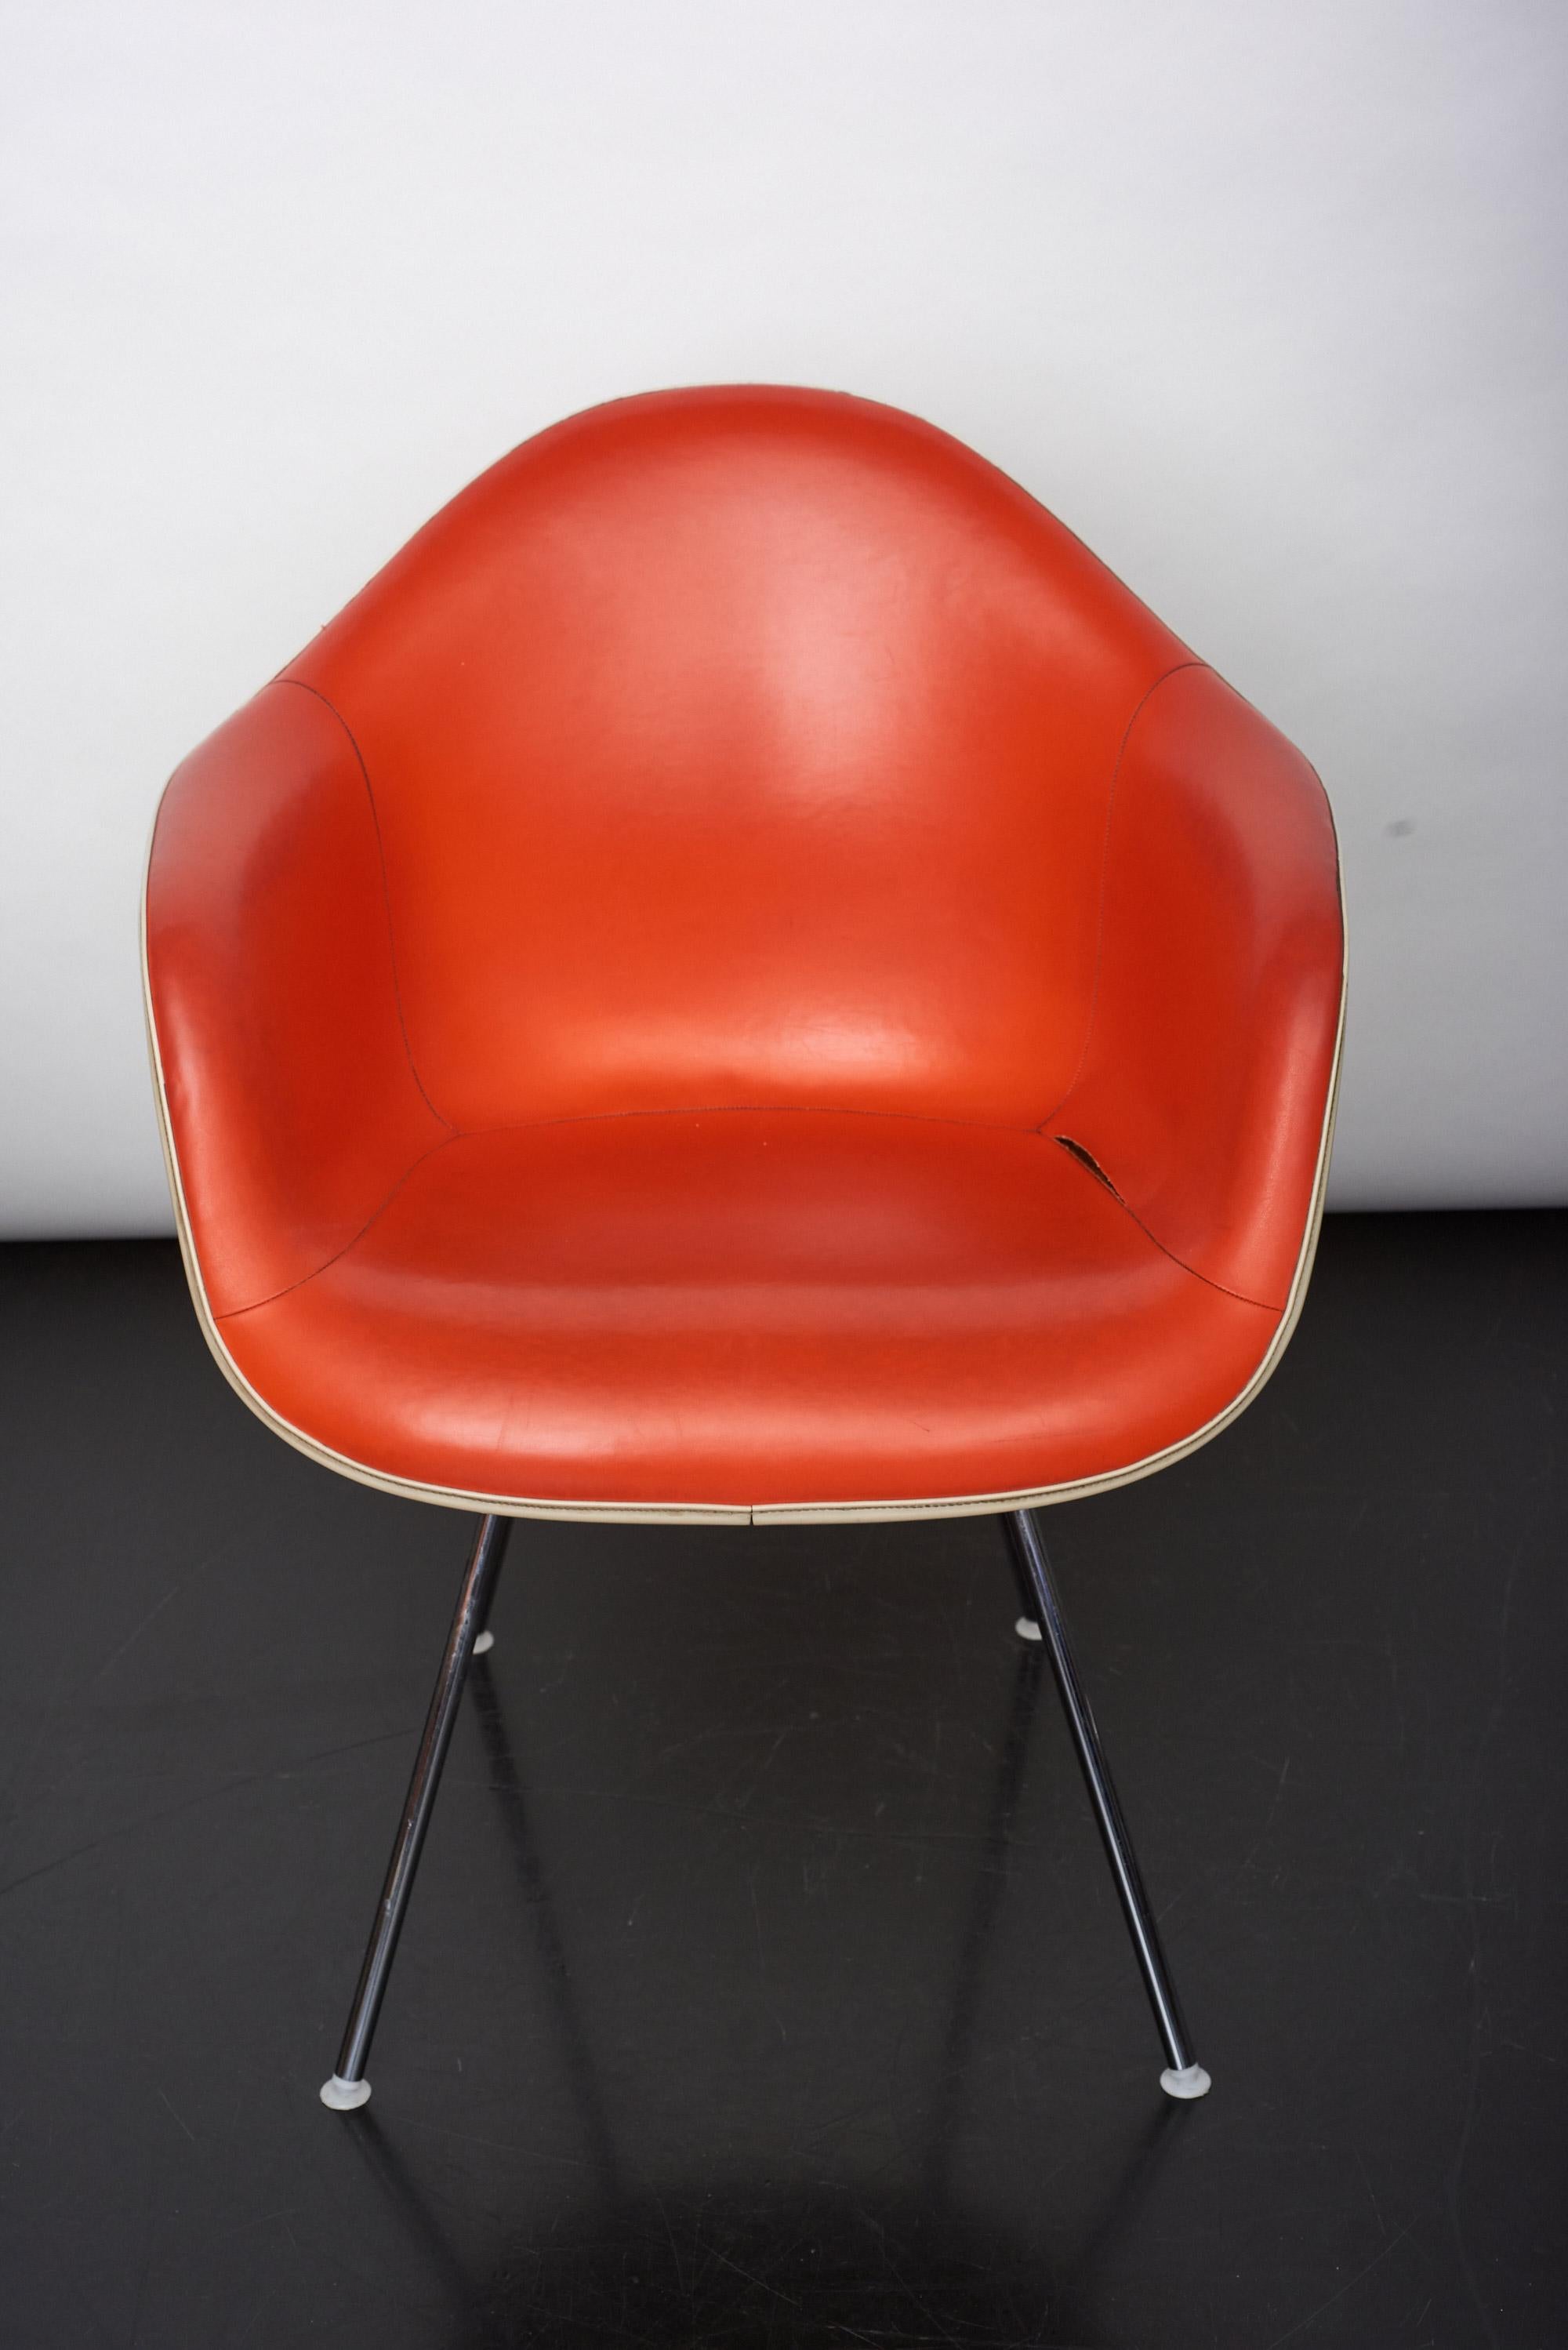 Der vollständig gepolsterte DAX-Stuhl ist Teil der Eames Plastic Armchairs-Kollektion, die erstmals im Rahmen eines Moma-Wettbewerbs in New York vorgestellt wurde. Ein ikonisches Designstück in einer sehr seltenen Version. Geformtes Fiberglas,